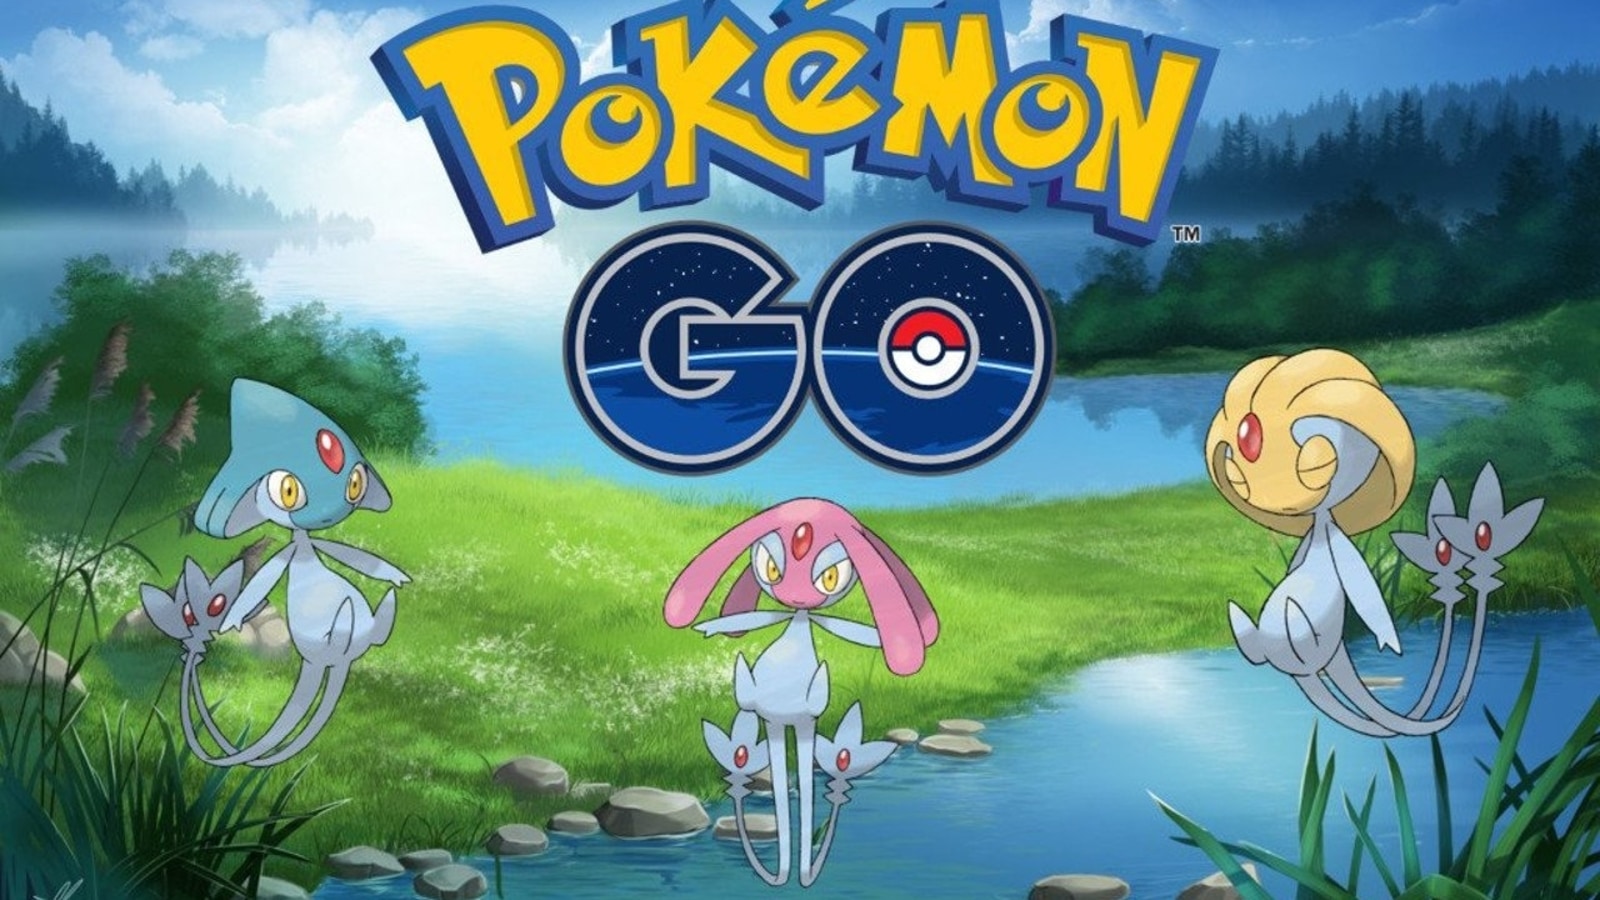 Localização e Coordenadas Azelf, Mesprit e Uxie Pokémon GO#pokemongo #